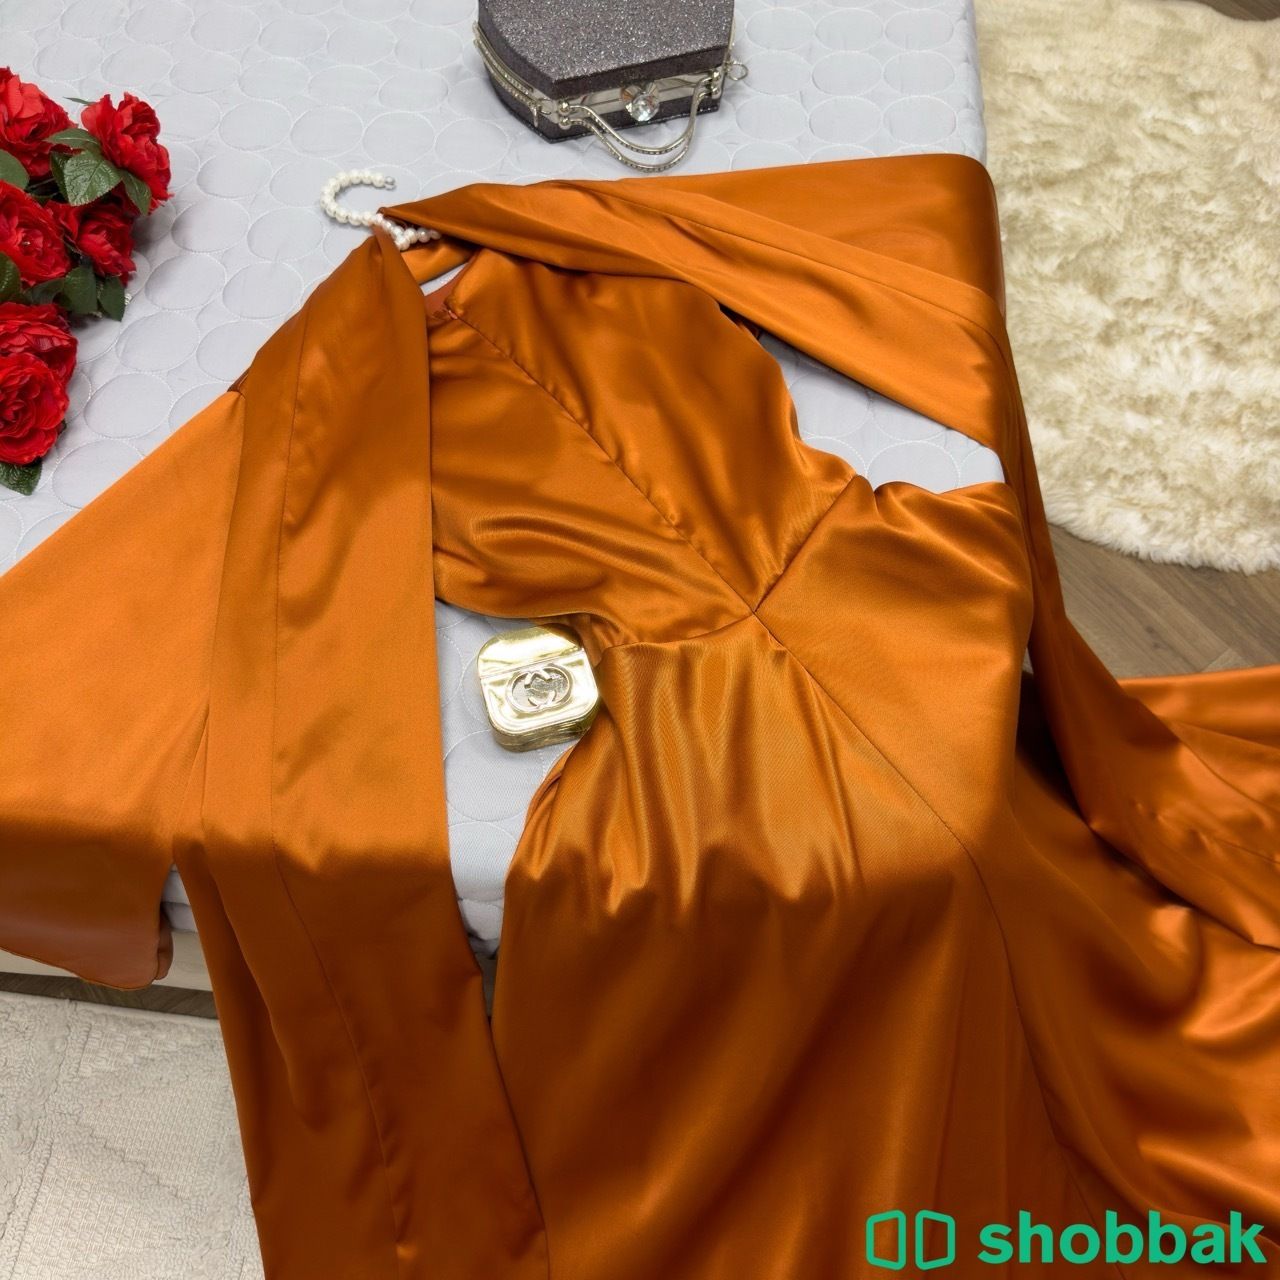 فستان شانطون ناعم  Shobbak Saudi Arabia